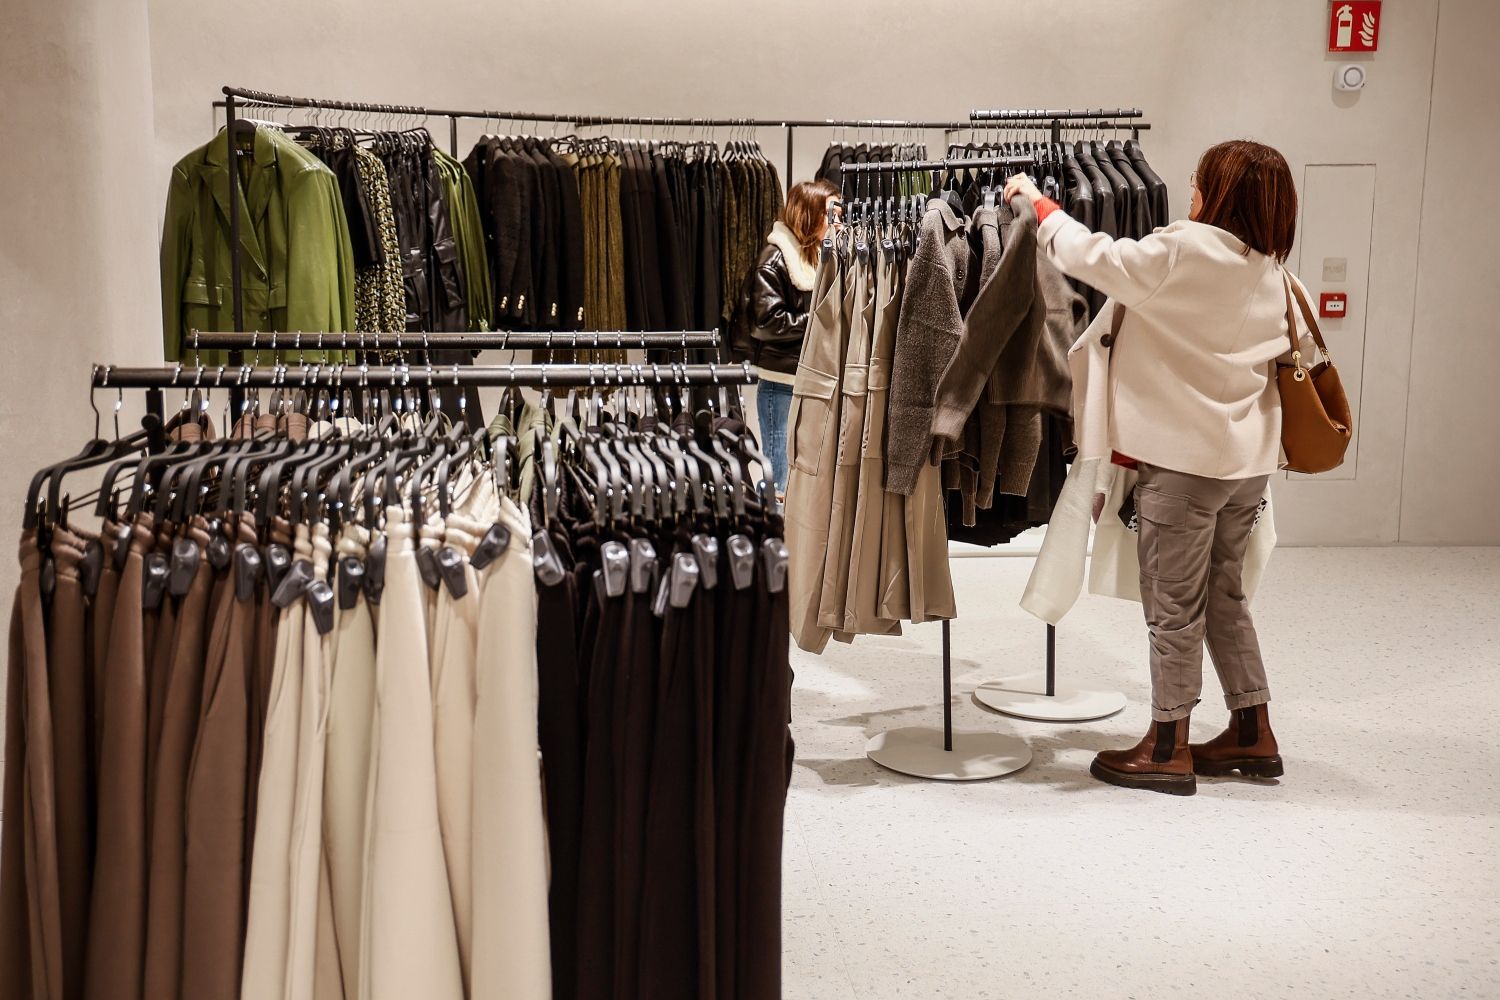 Una clienta vuelve a colocar una prenda en una tienda de Zara / Rober Solsona - EP